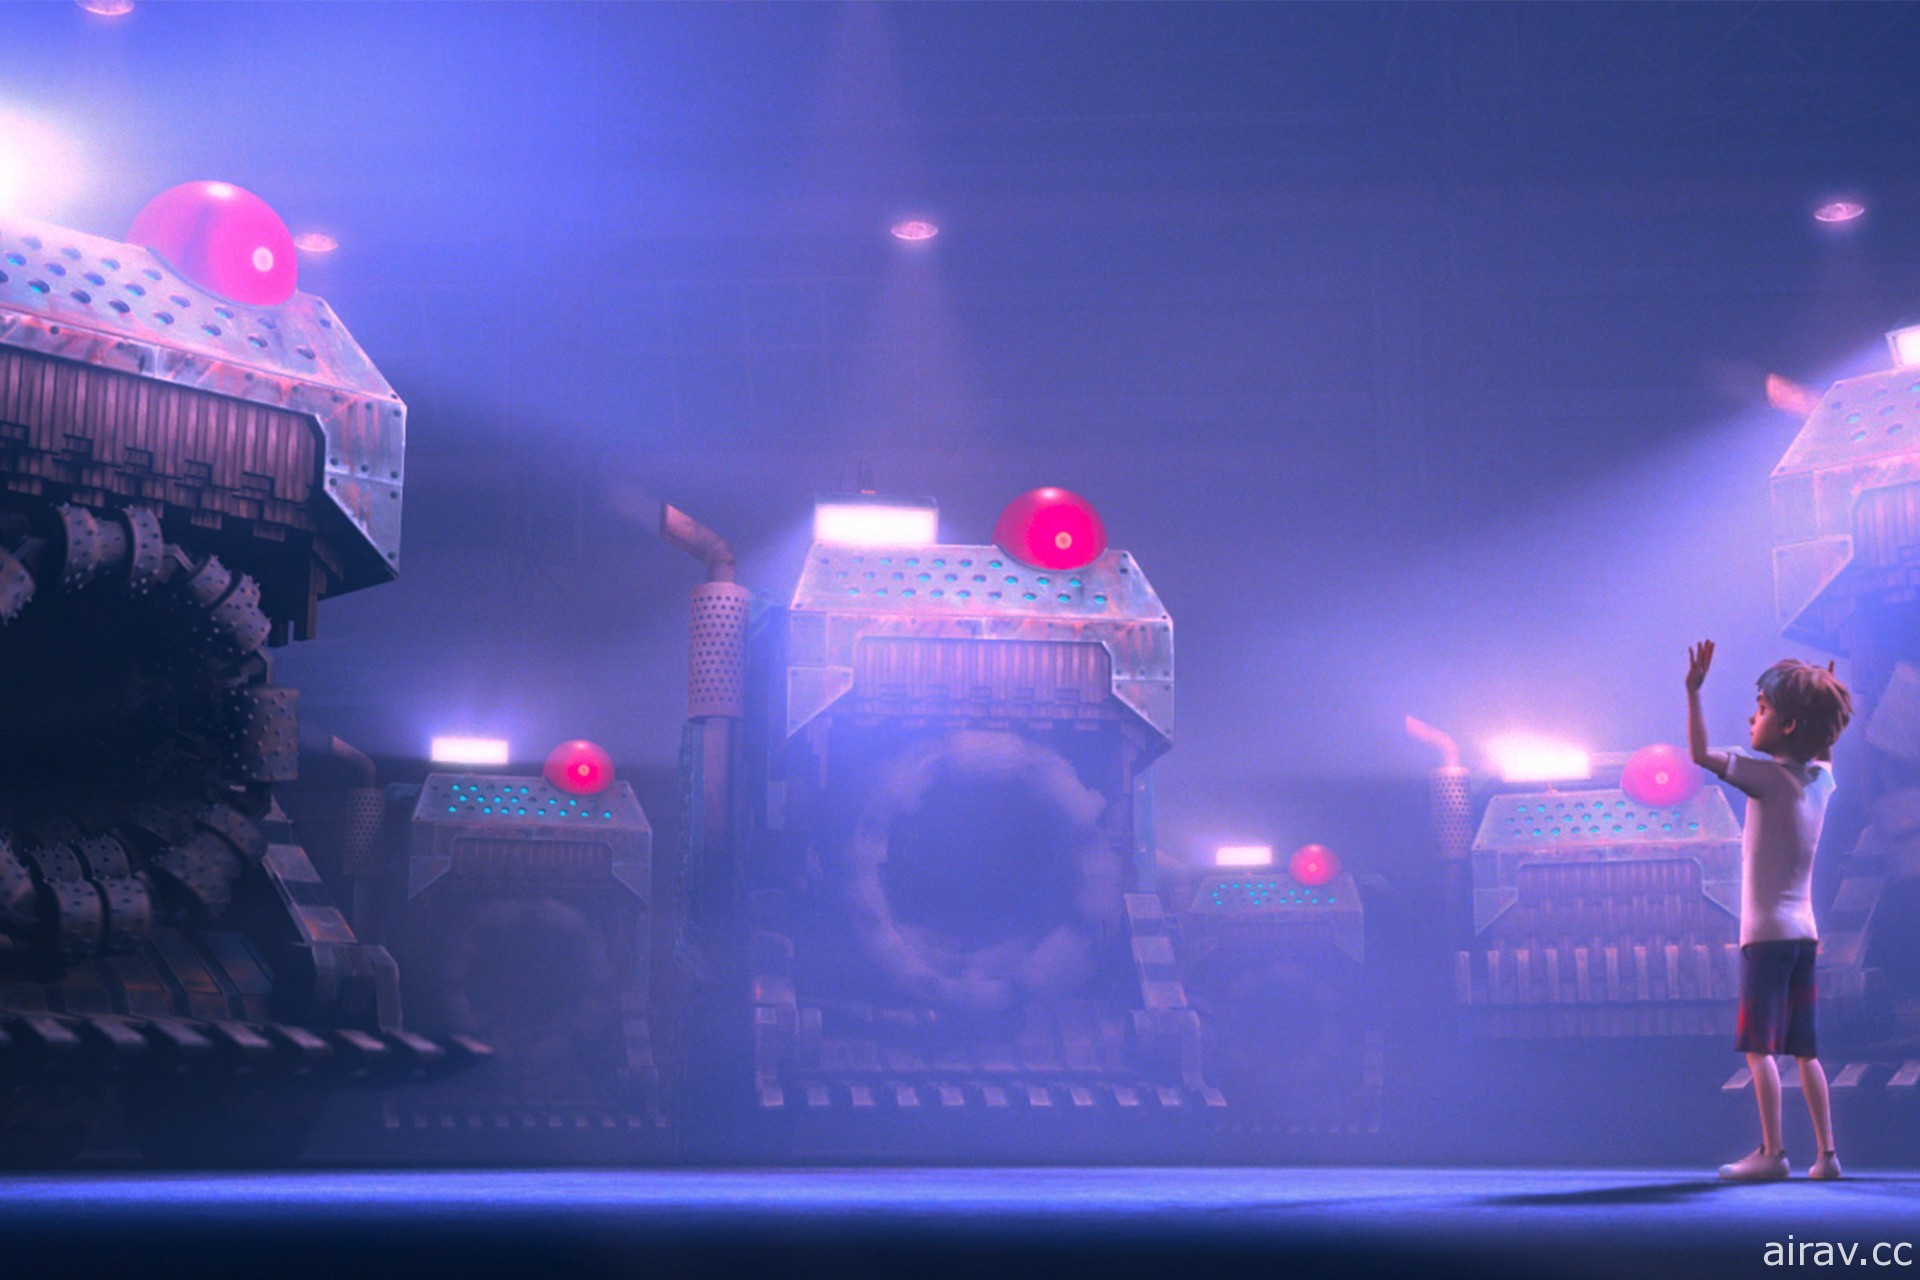 《废弃之城》释出正式预告影片 持修献声演唱电影主题曲